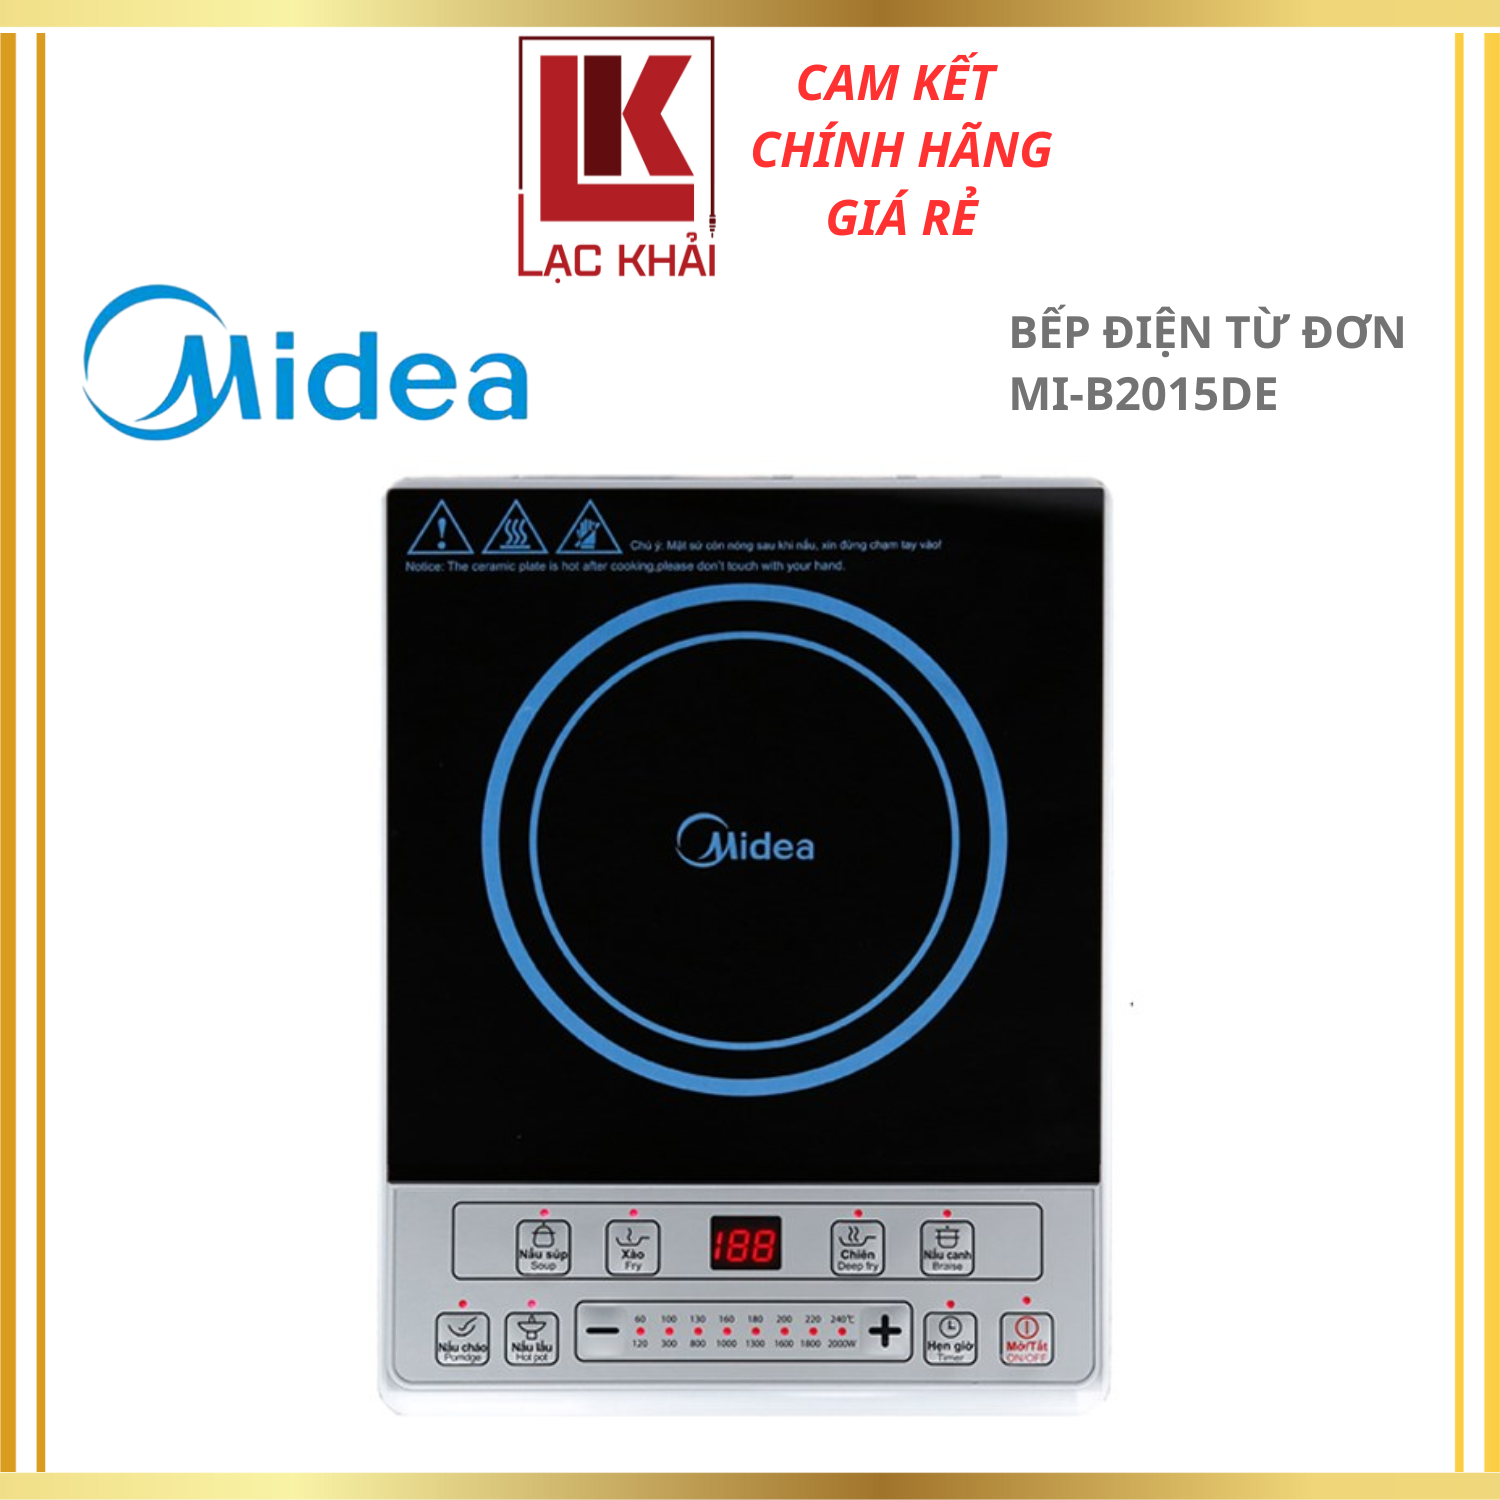 Bếp điện từ Midea MI-B2015DE , Công suất 2000W, Mặt kính Caremic, Hẹn giờ , nút nhấn điện tử - Hàng chính hãng , Bảo hành 12 tháng chính hãng